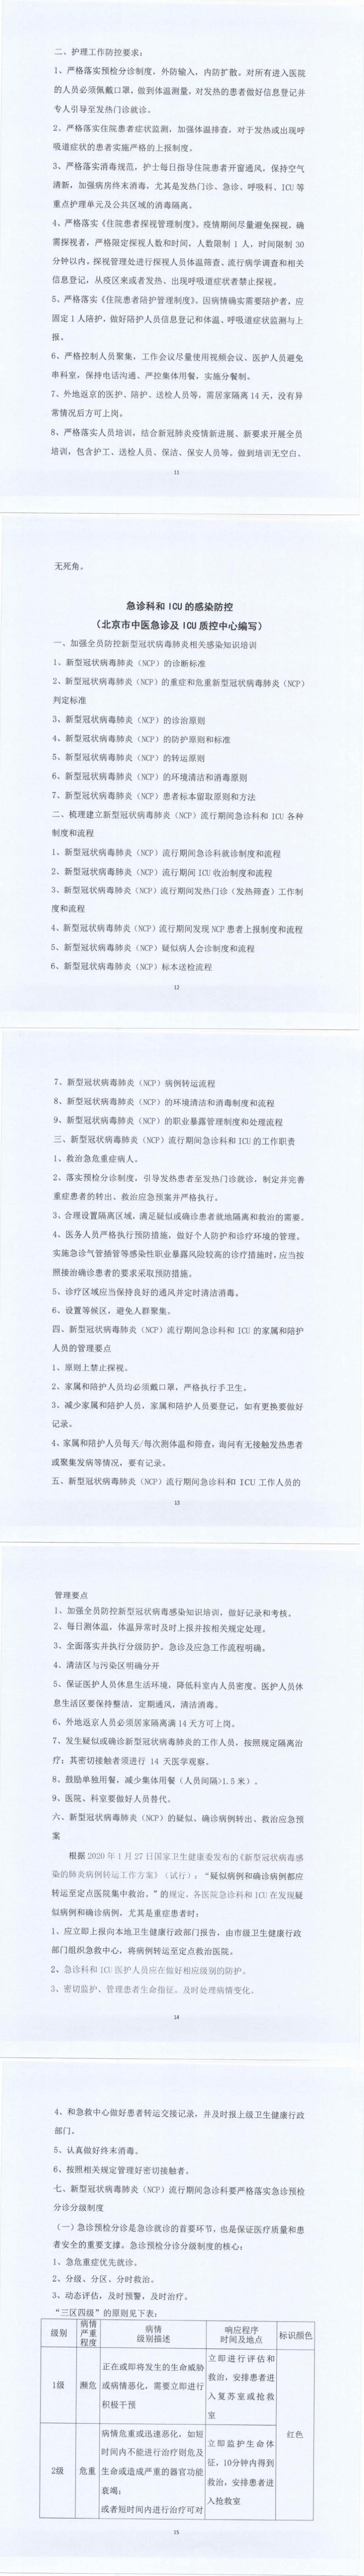 关于北京市中医医疗机构感染防控的指导意见_11-15_0.jpg